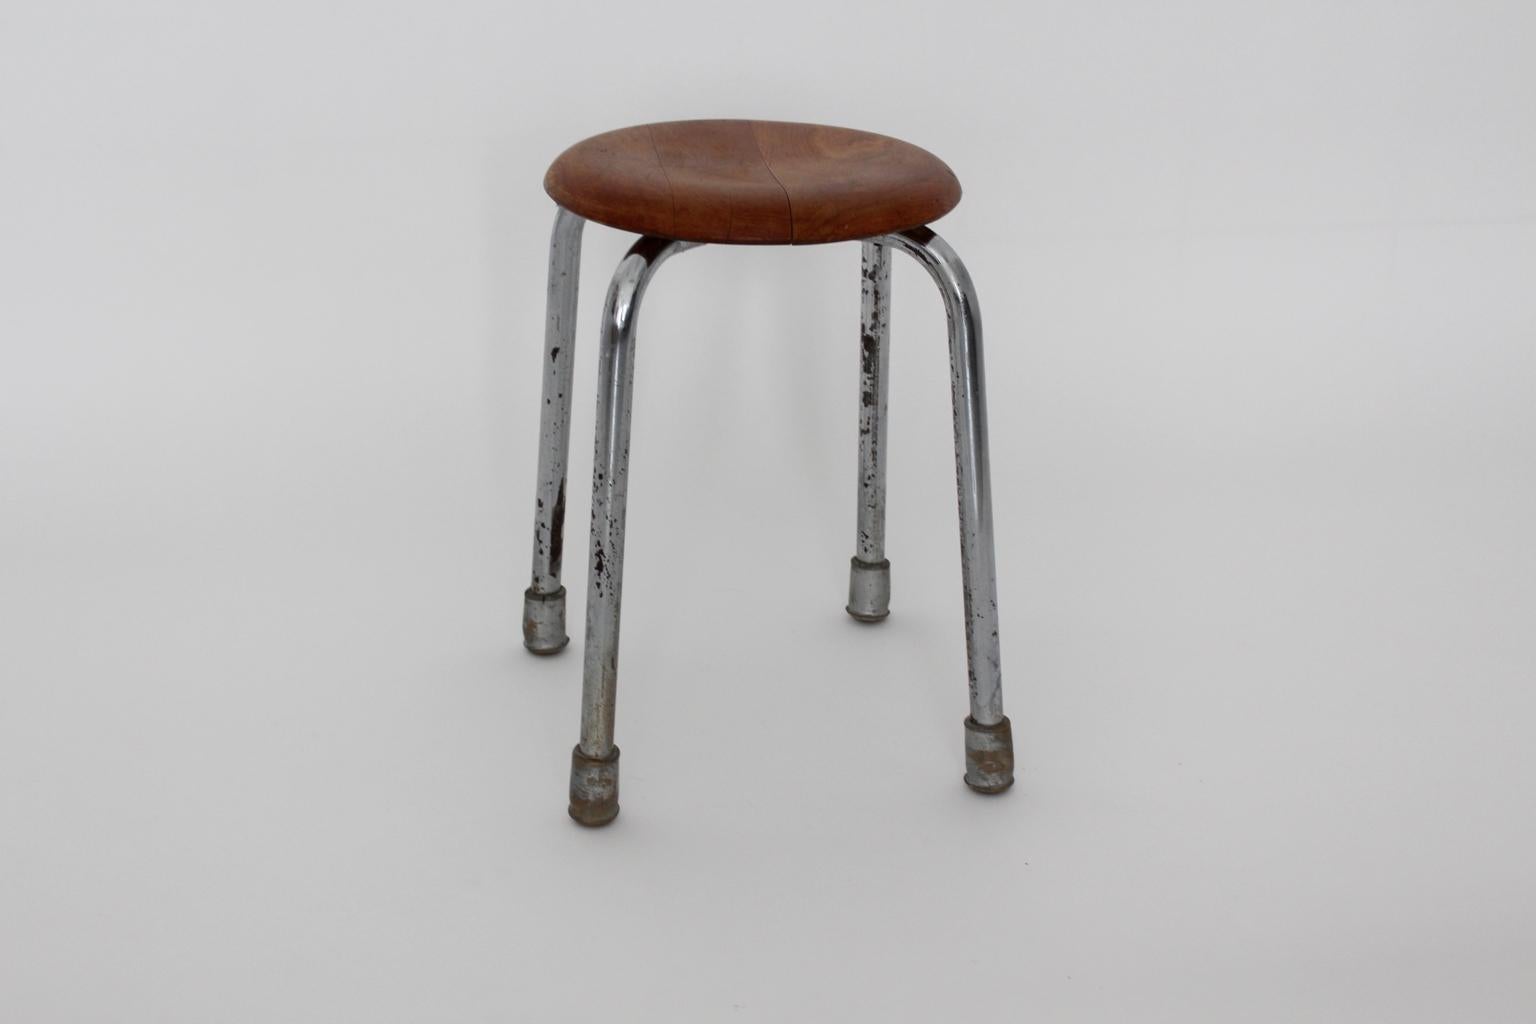 Der verchromte Metallhocker hat 4 Füße mit Gummisockeln und eine runde Sitzfläche aus Buchenholz.
Guter Vintage-Zustand mit einigen Altersspuren.
ca. Maße:
durchmesser: 49 cm
höhe: 47,5 cm.